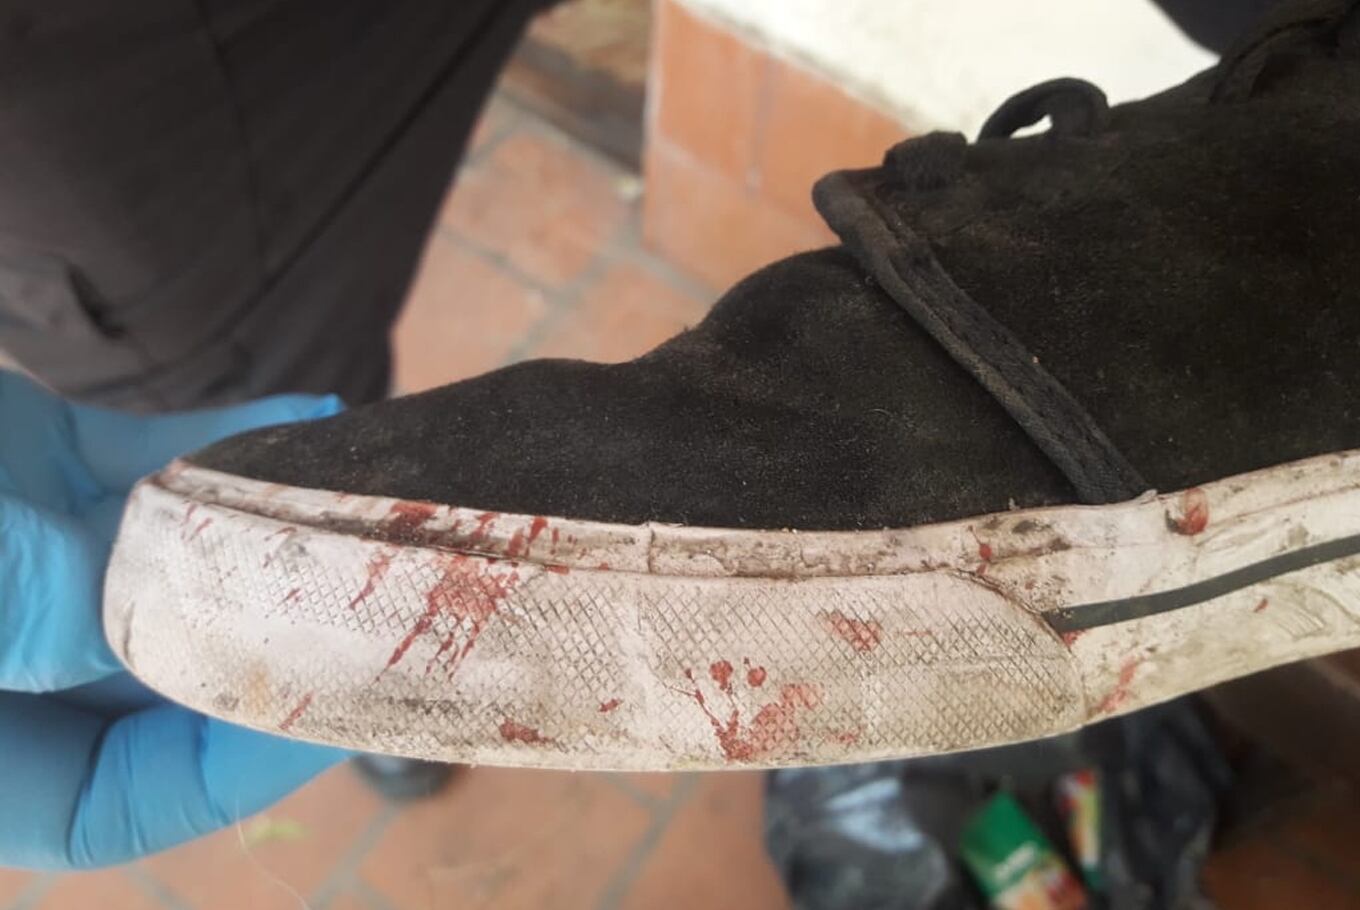 Crimen de Fernando Báez Sosa: la marca de la zapatilla en la cara de la víctima es de Máximo Thomsen